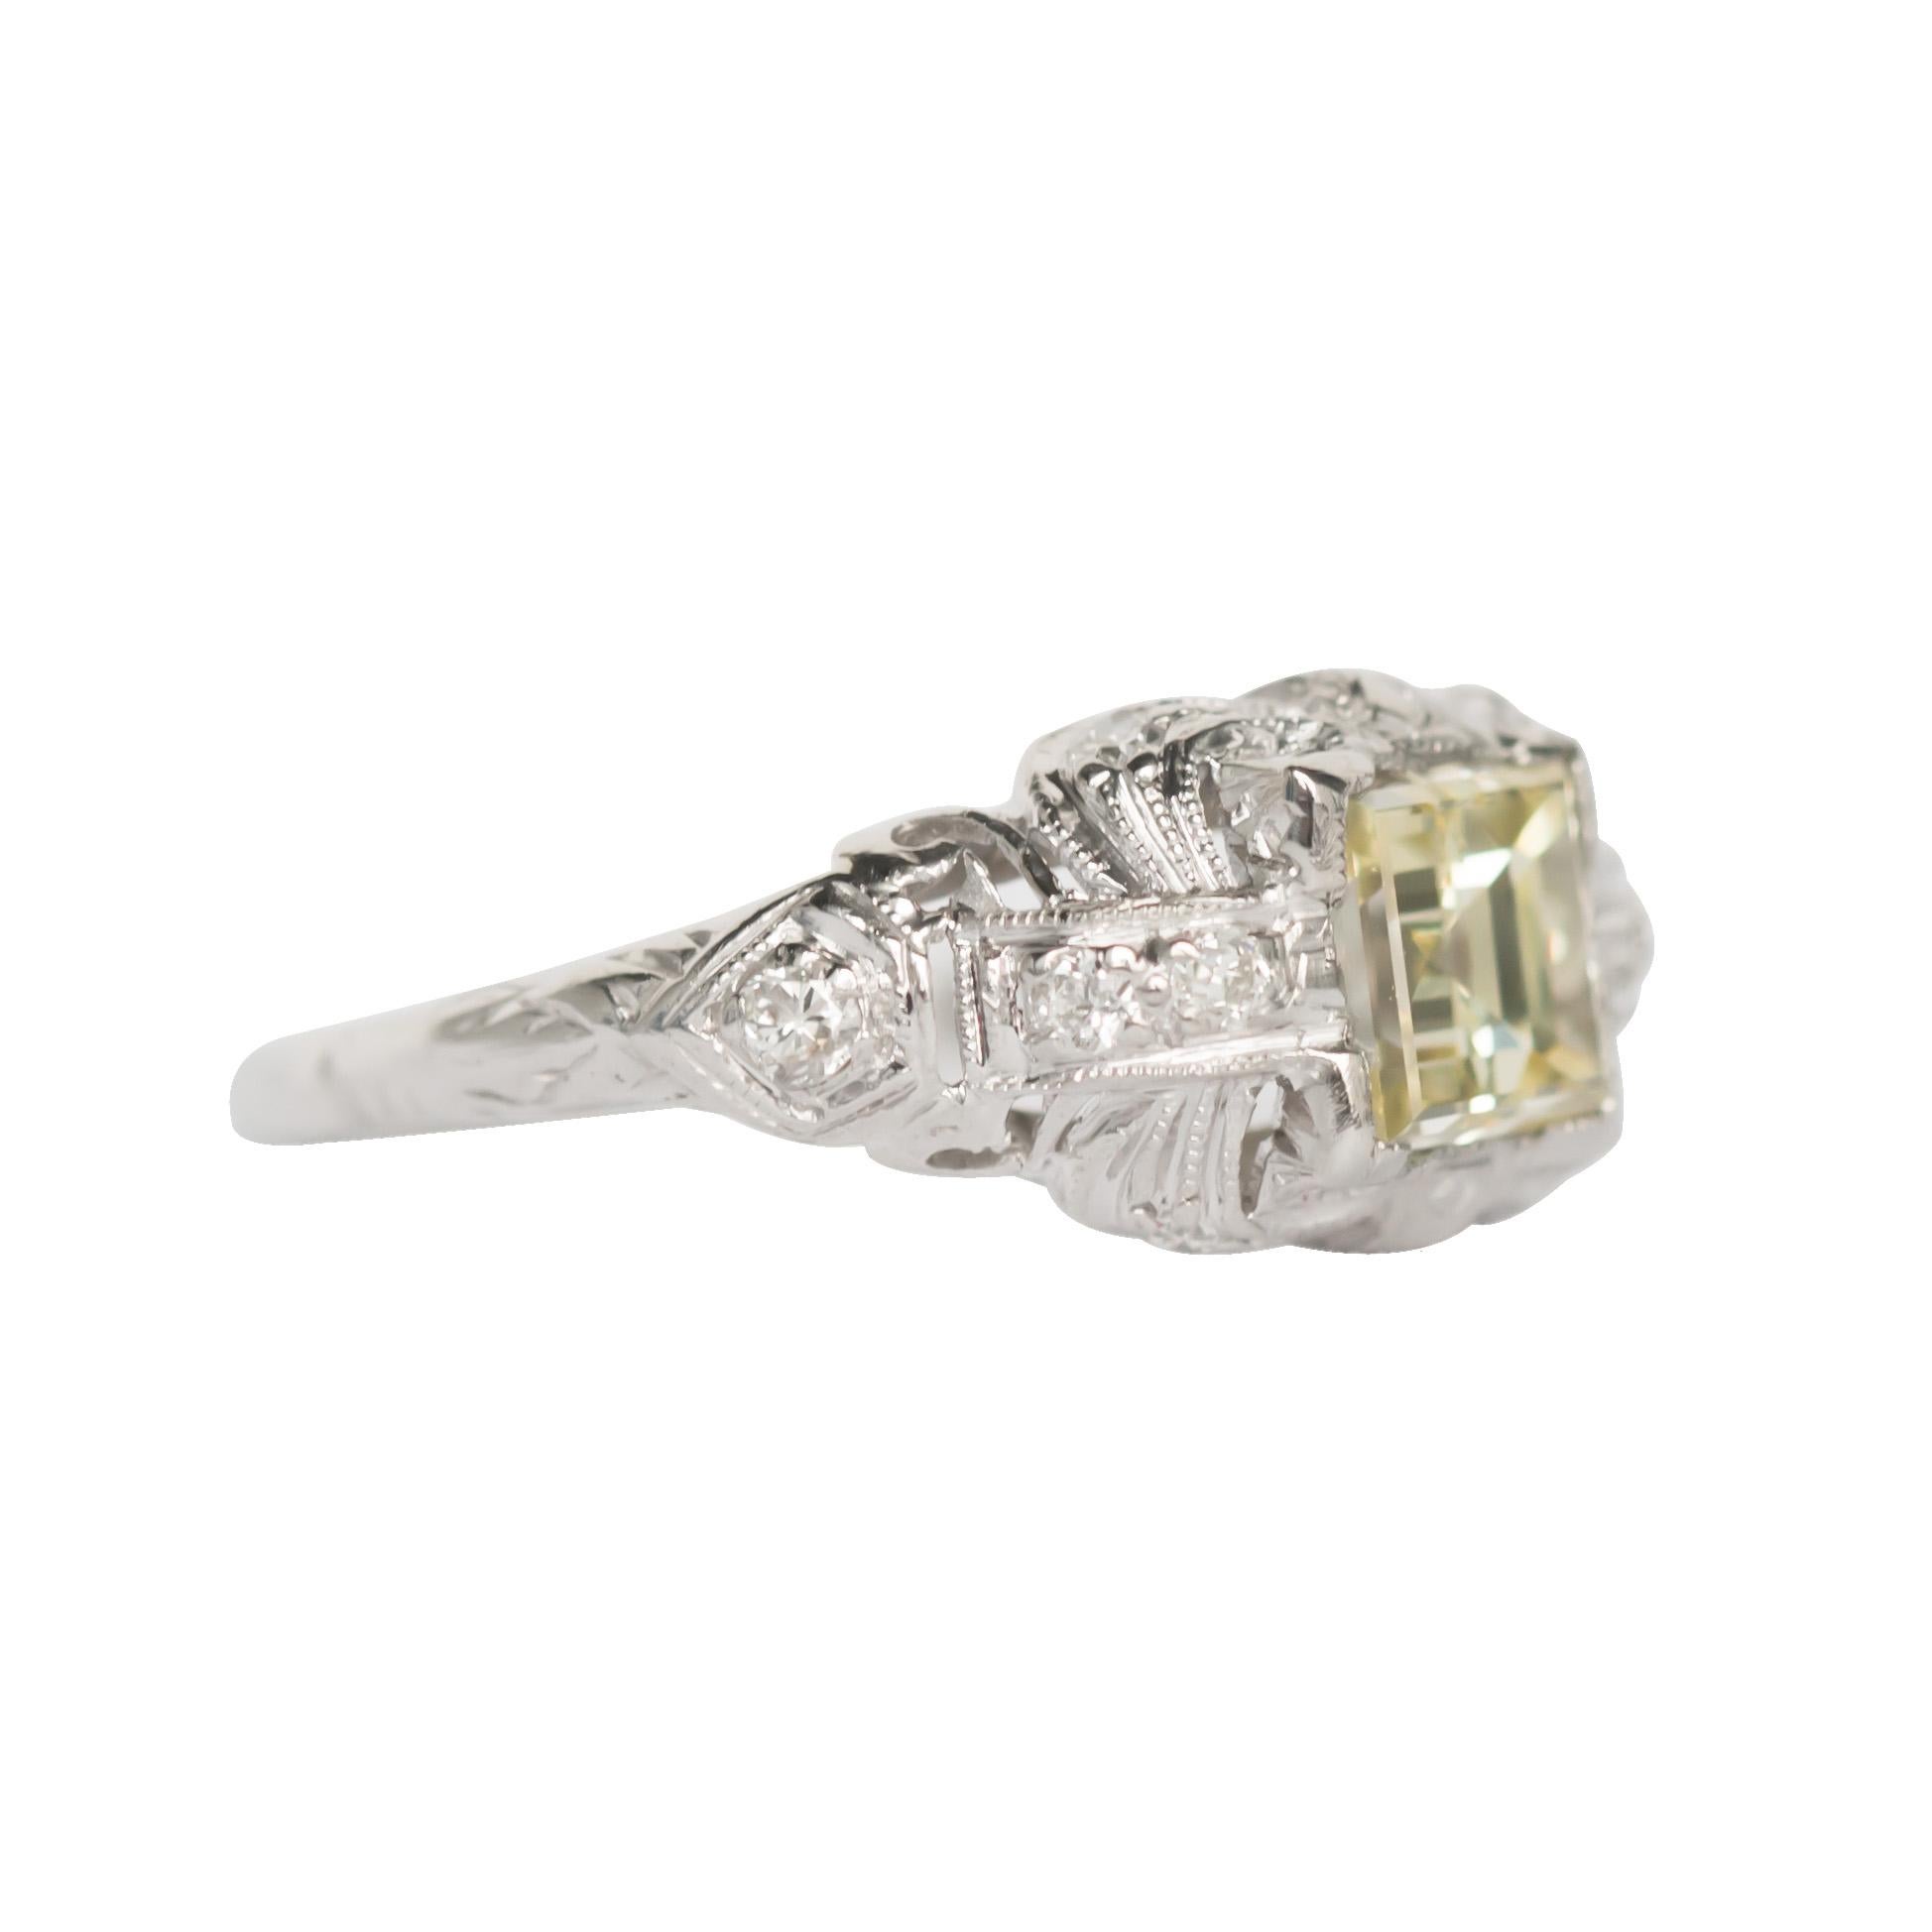 Edwardian GIA Certified 1.08 Carat Diamond Platinum Engagement Ring